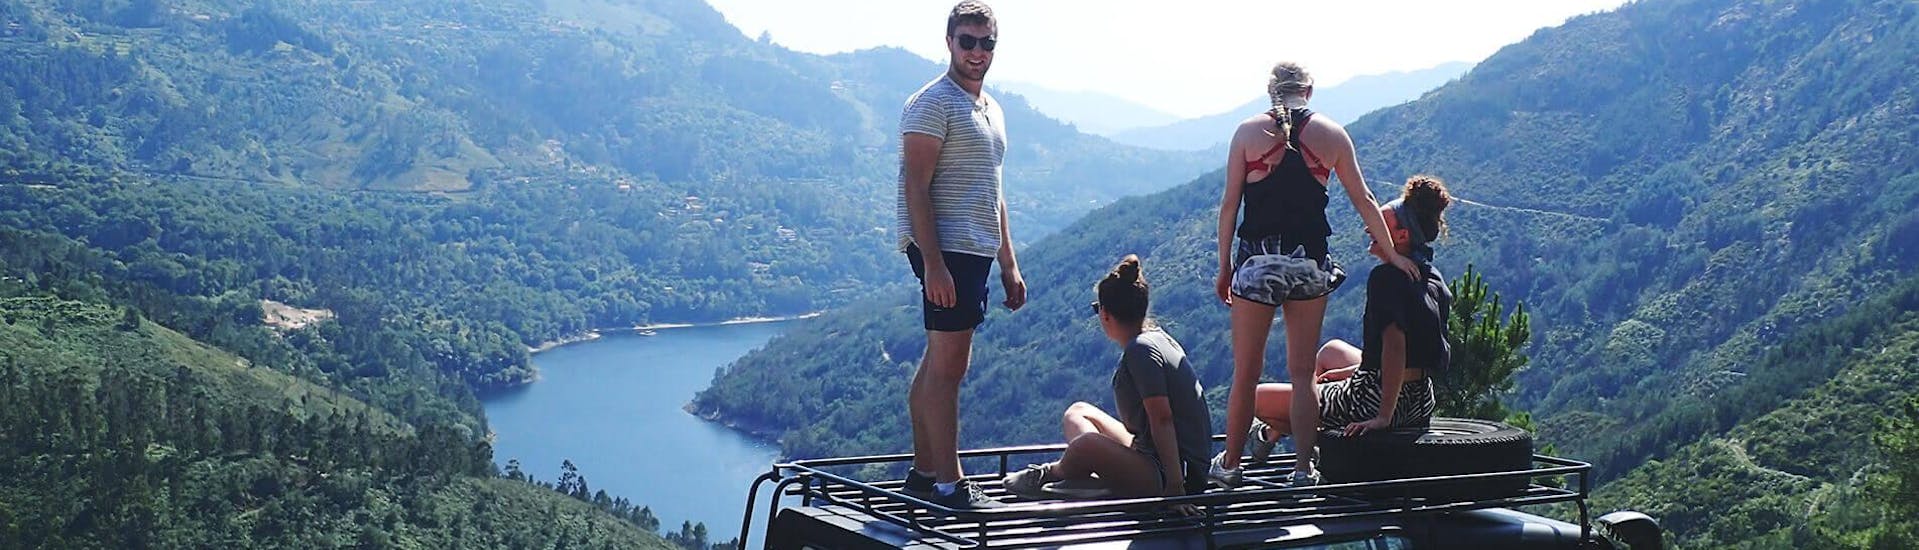 Eine Gruppe junger Leute steht auf dem Dach eines Geländewagens von Oporto Adventure Tours und genießt den Ausblick auf die atemberaubende Landschaft um sich herum.